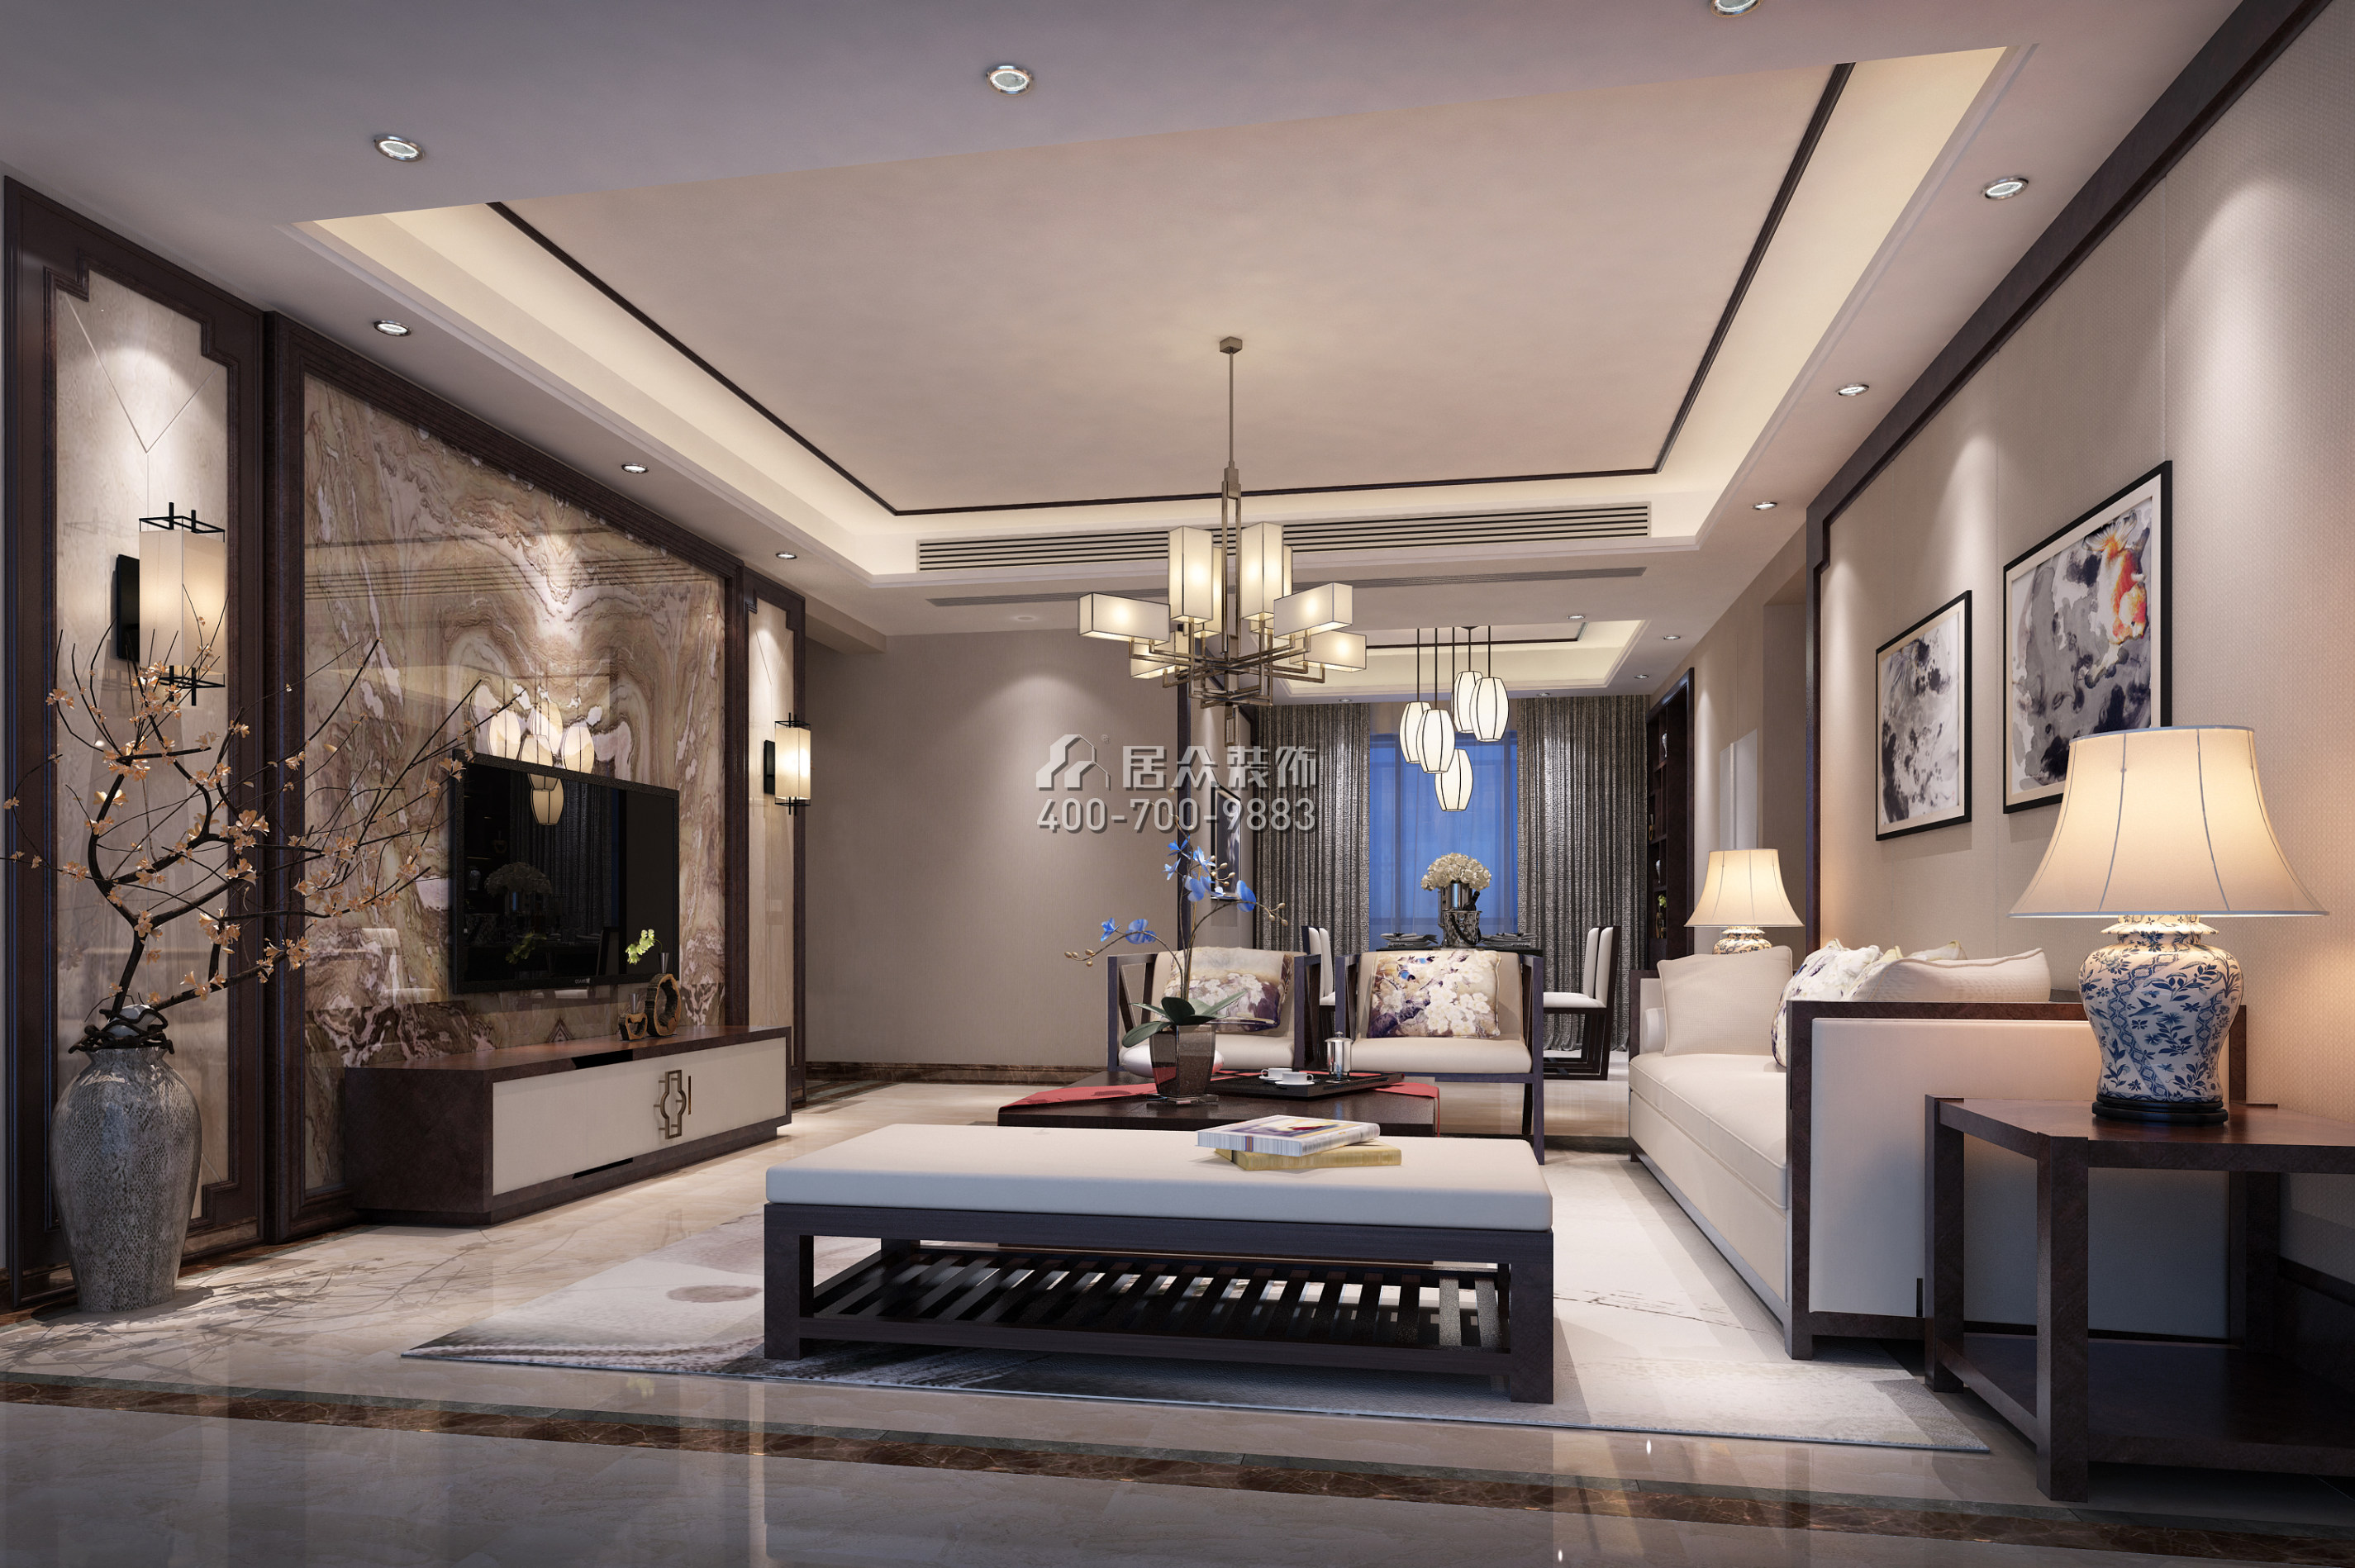 水木丹华143平方米混搭风格平层户型客厅装修效果图